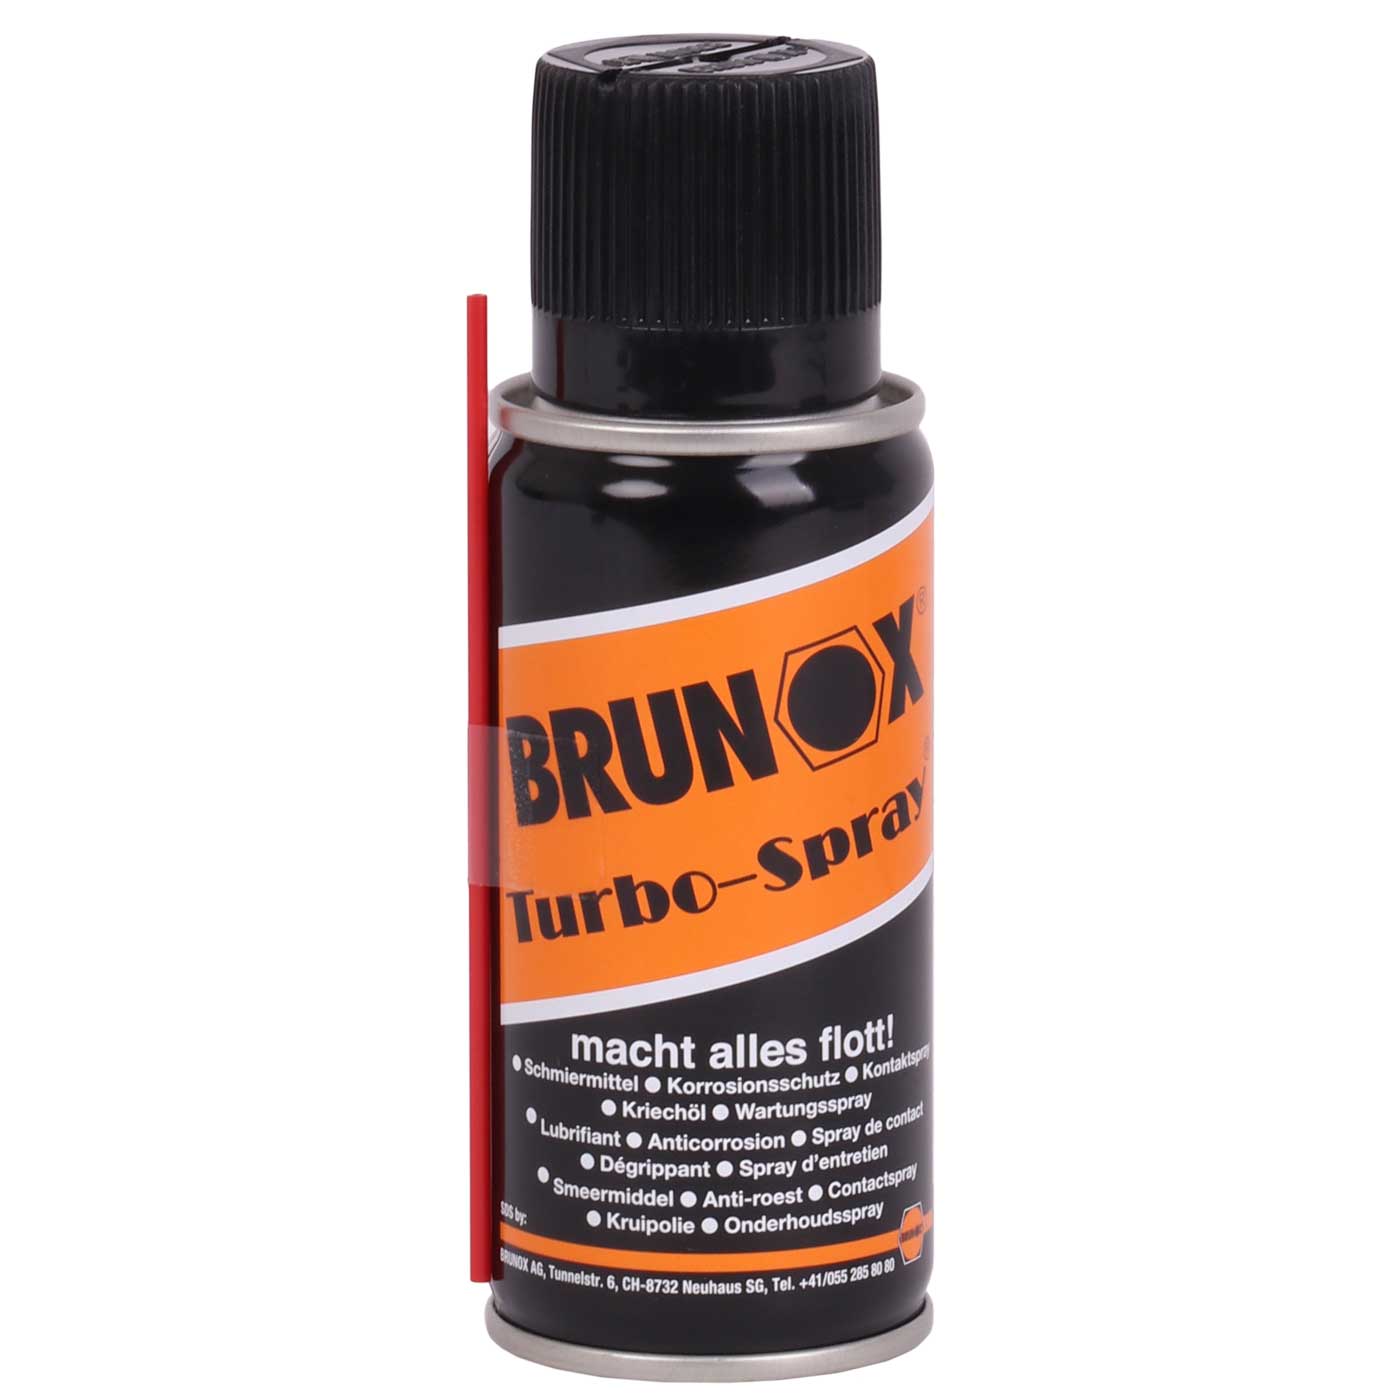 Produktbild von Brunox Turbo-Spray 100ml